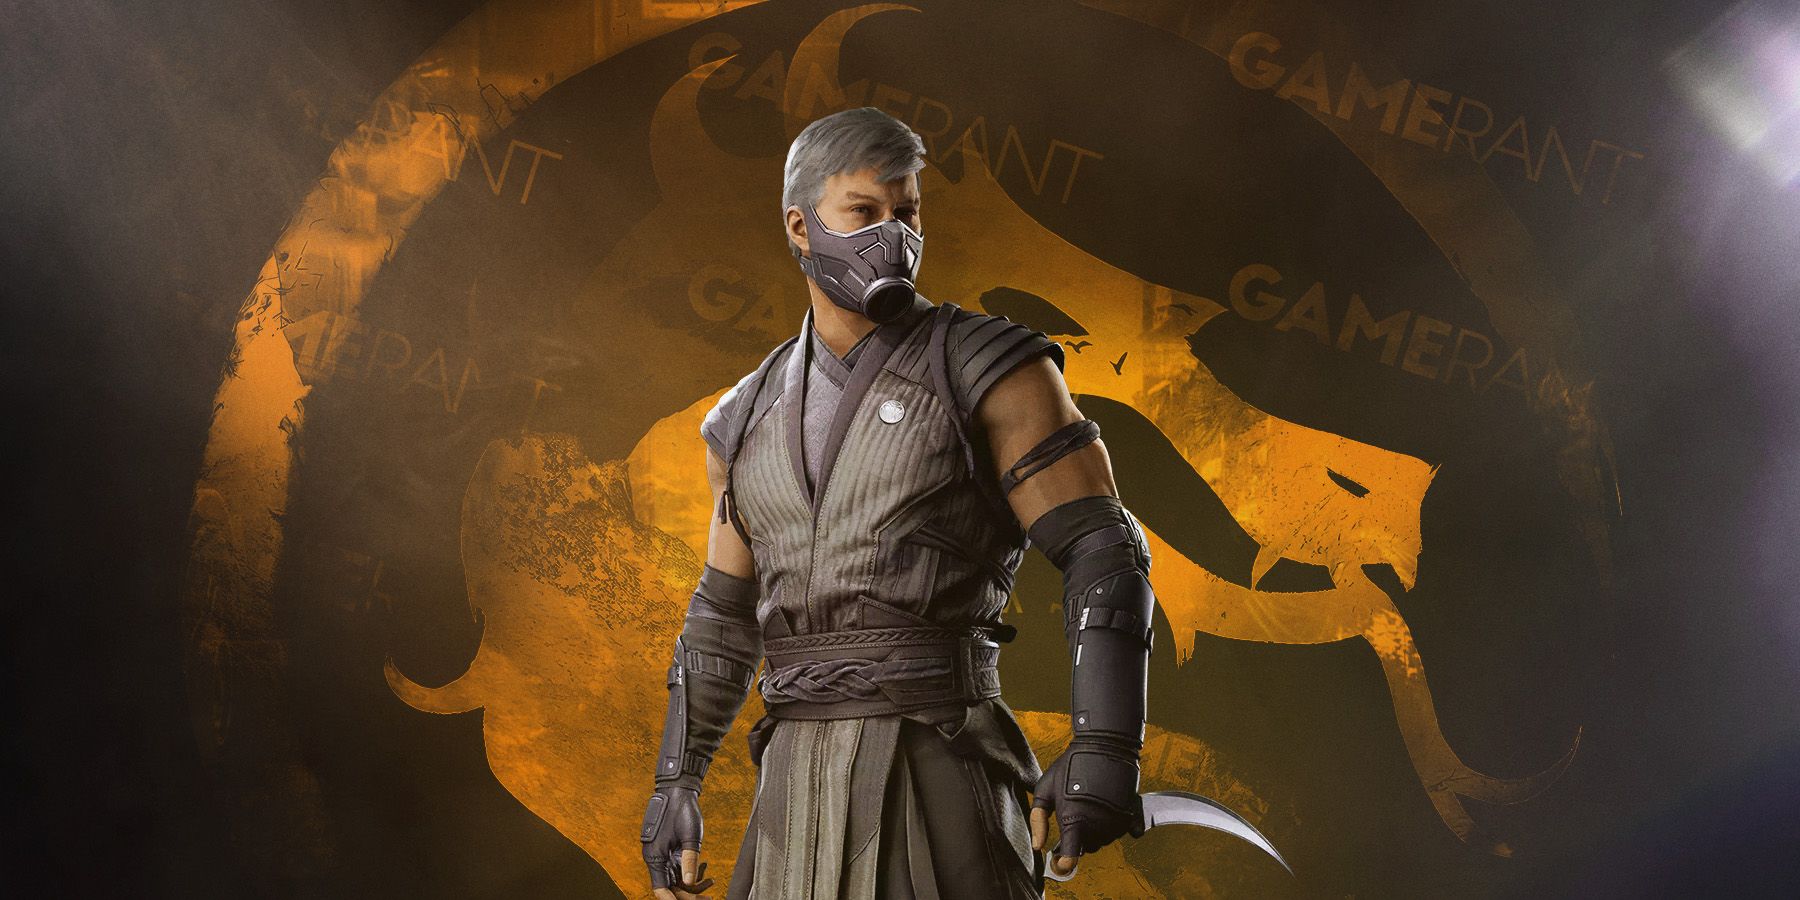 Mortal Kombat Pattern Could Hint at Kombat Pack 2 DLC